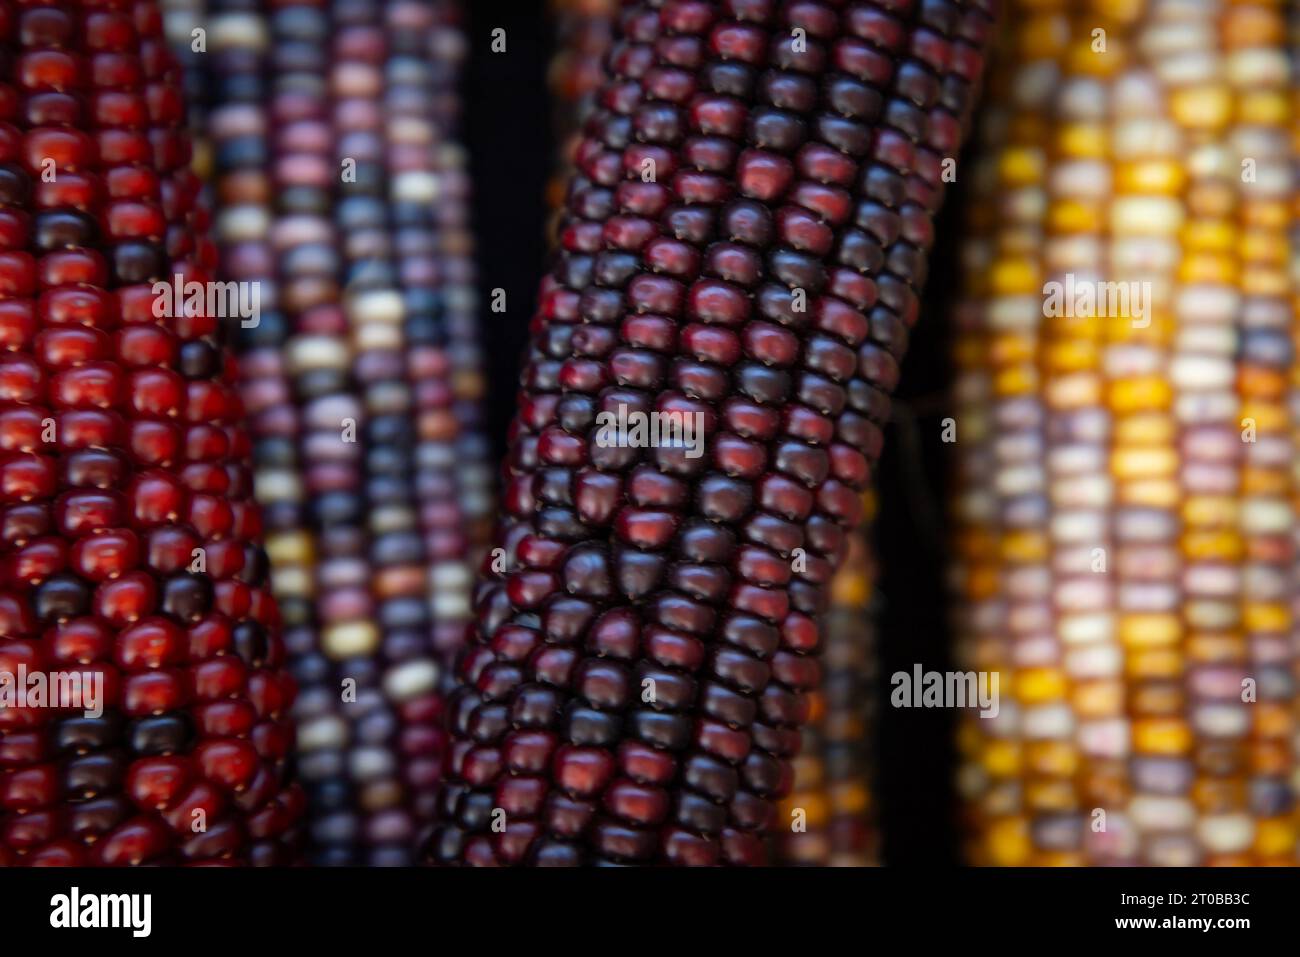 Indischer Mais ist ein ornamentaler mehrfarbiger Mais, der die Erntezeit im Herbst symbolisiert. Stockfoto